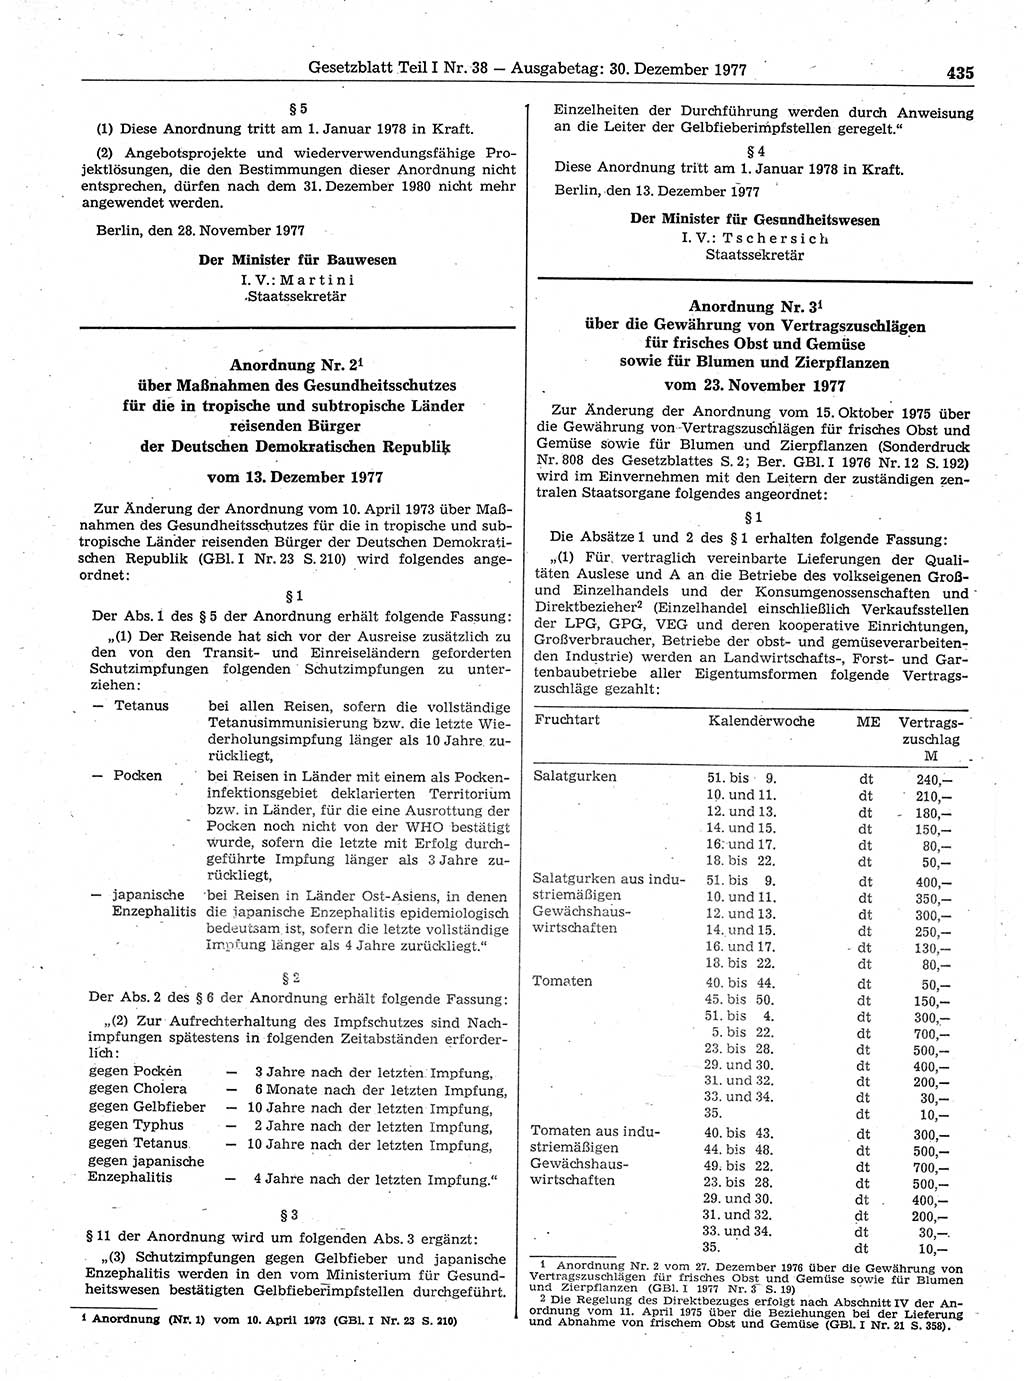 Gesetzblatt (GBl.) der Deutschen Demokratischen Republik (DDR) Teil Ⅰ 1977, Seite 435 (GBl. DDR Ⅰ 1977, S. 435)